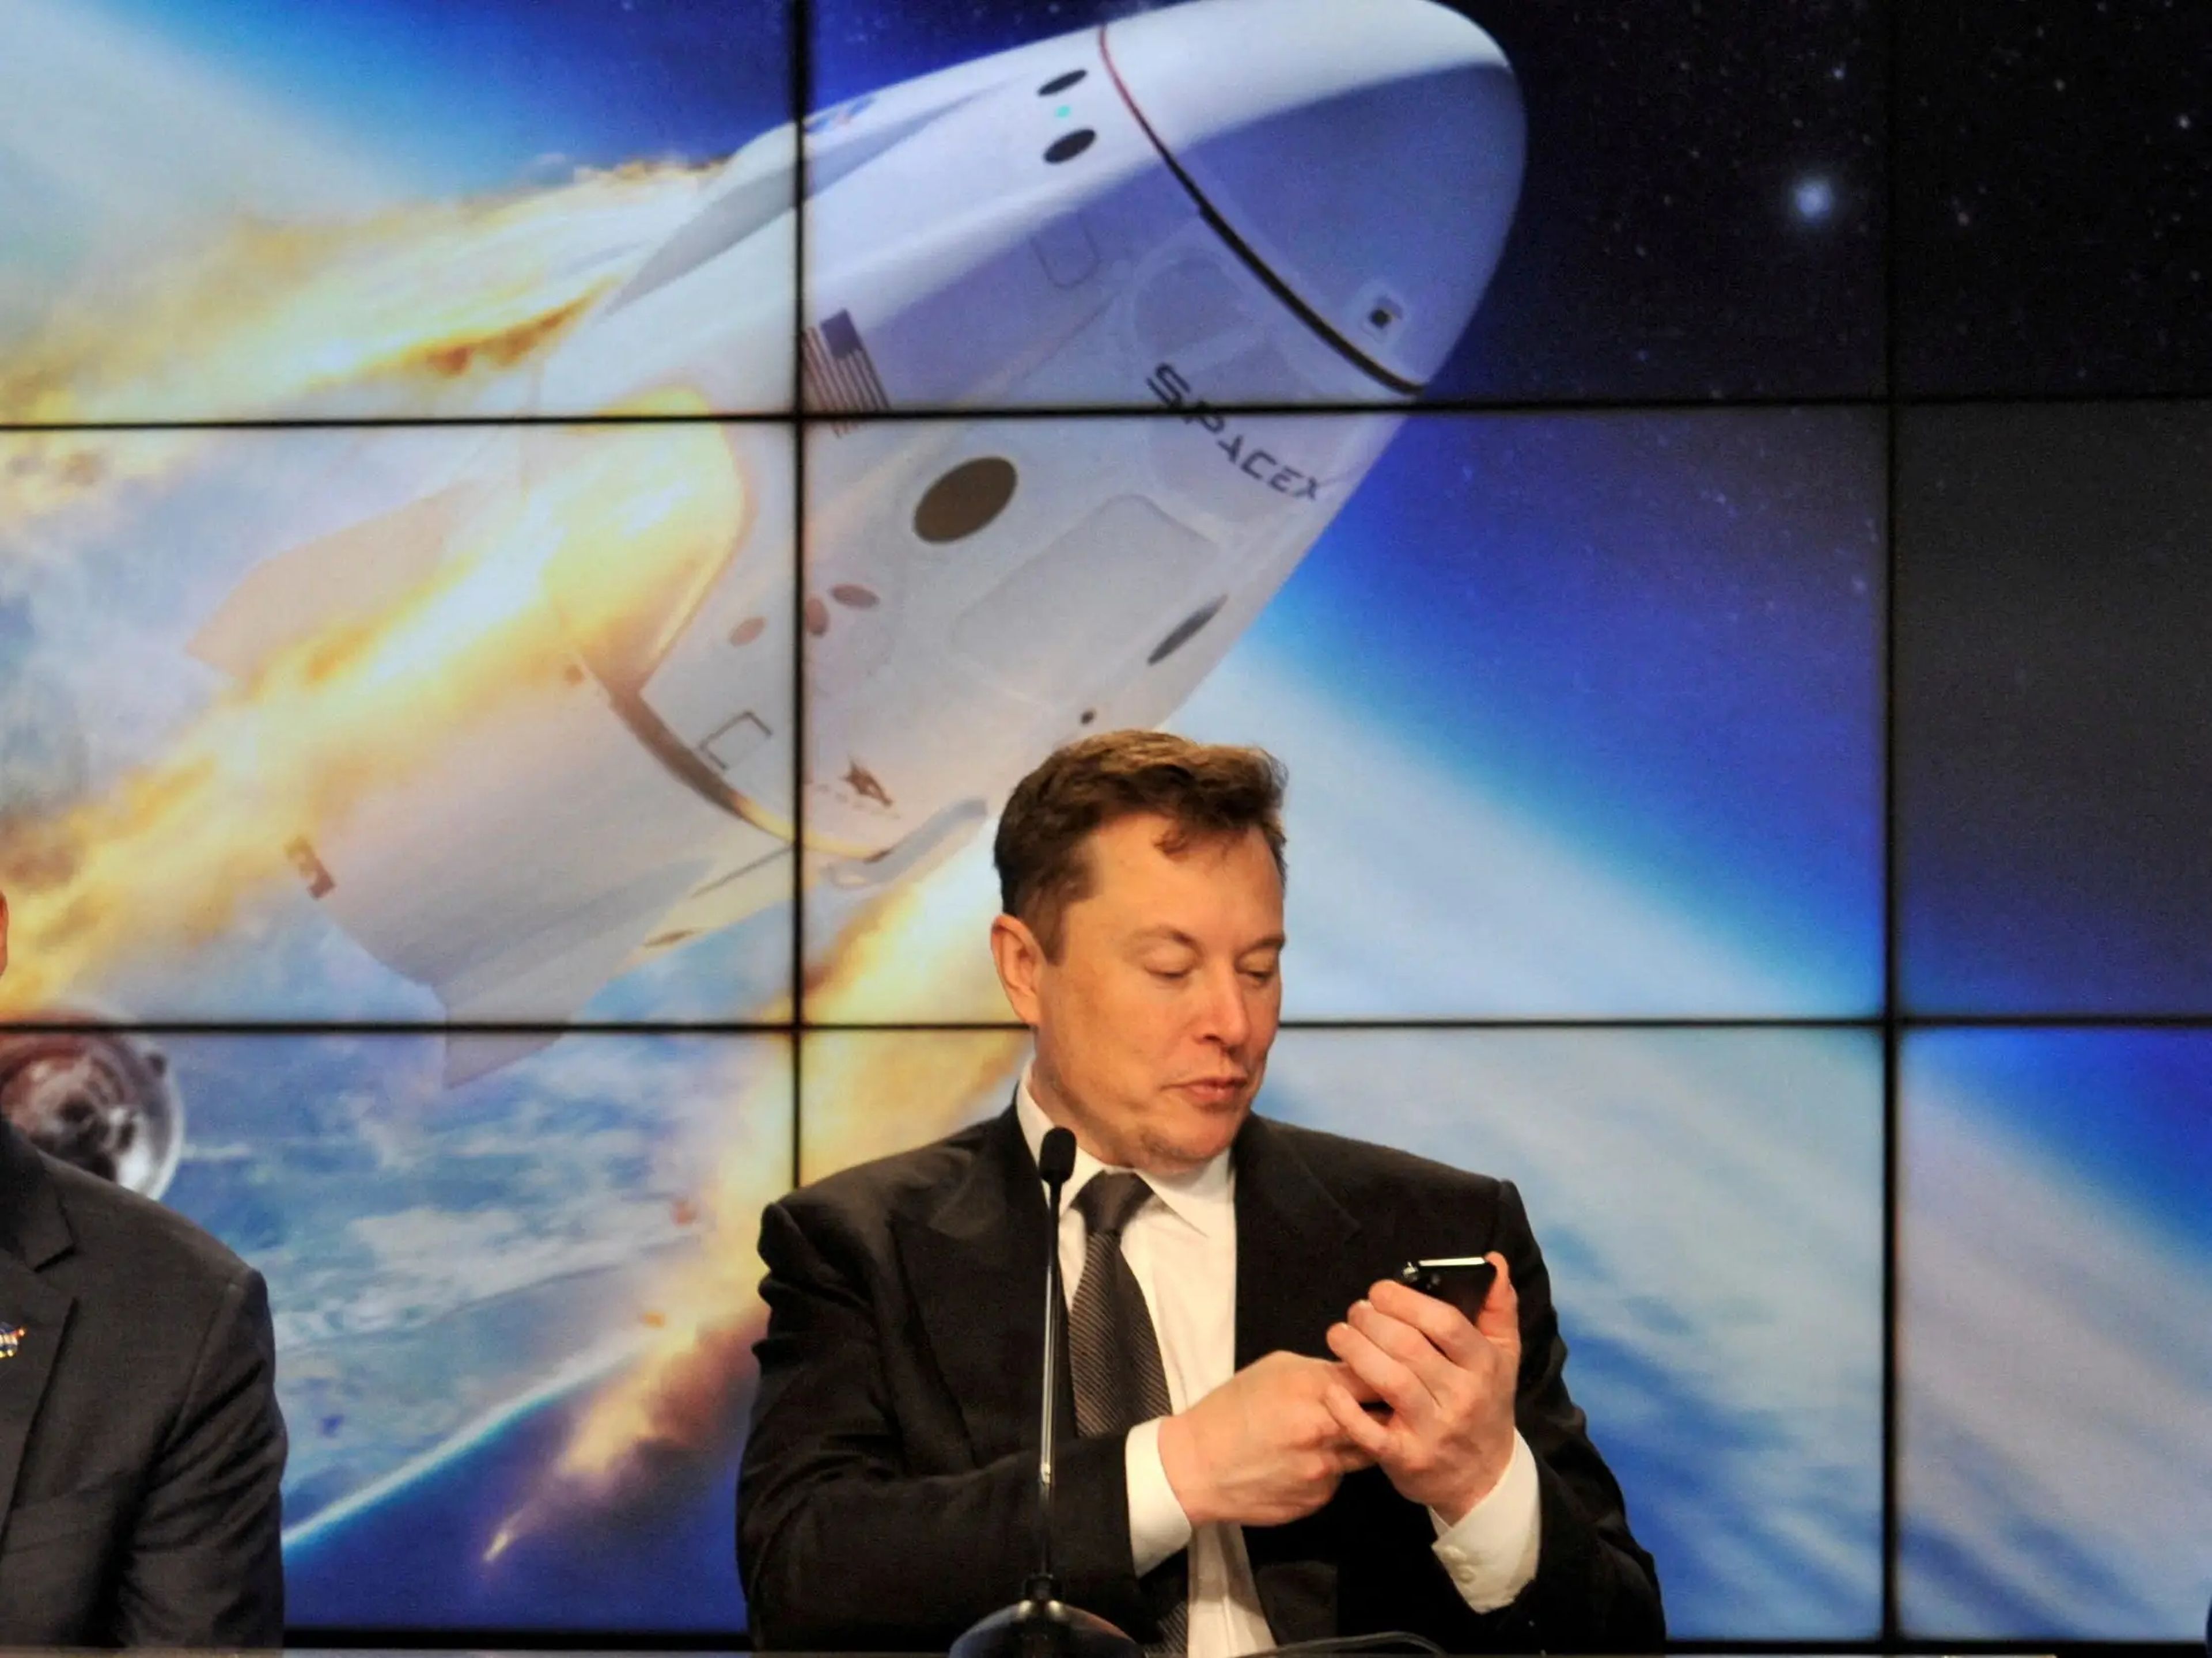 Eberhard afirma que envió a Musk una nota de felicitación en 2008, cuando SpaceX envió su primer cohete al espacio.